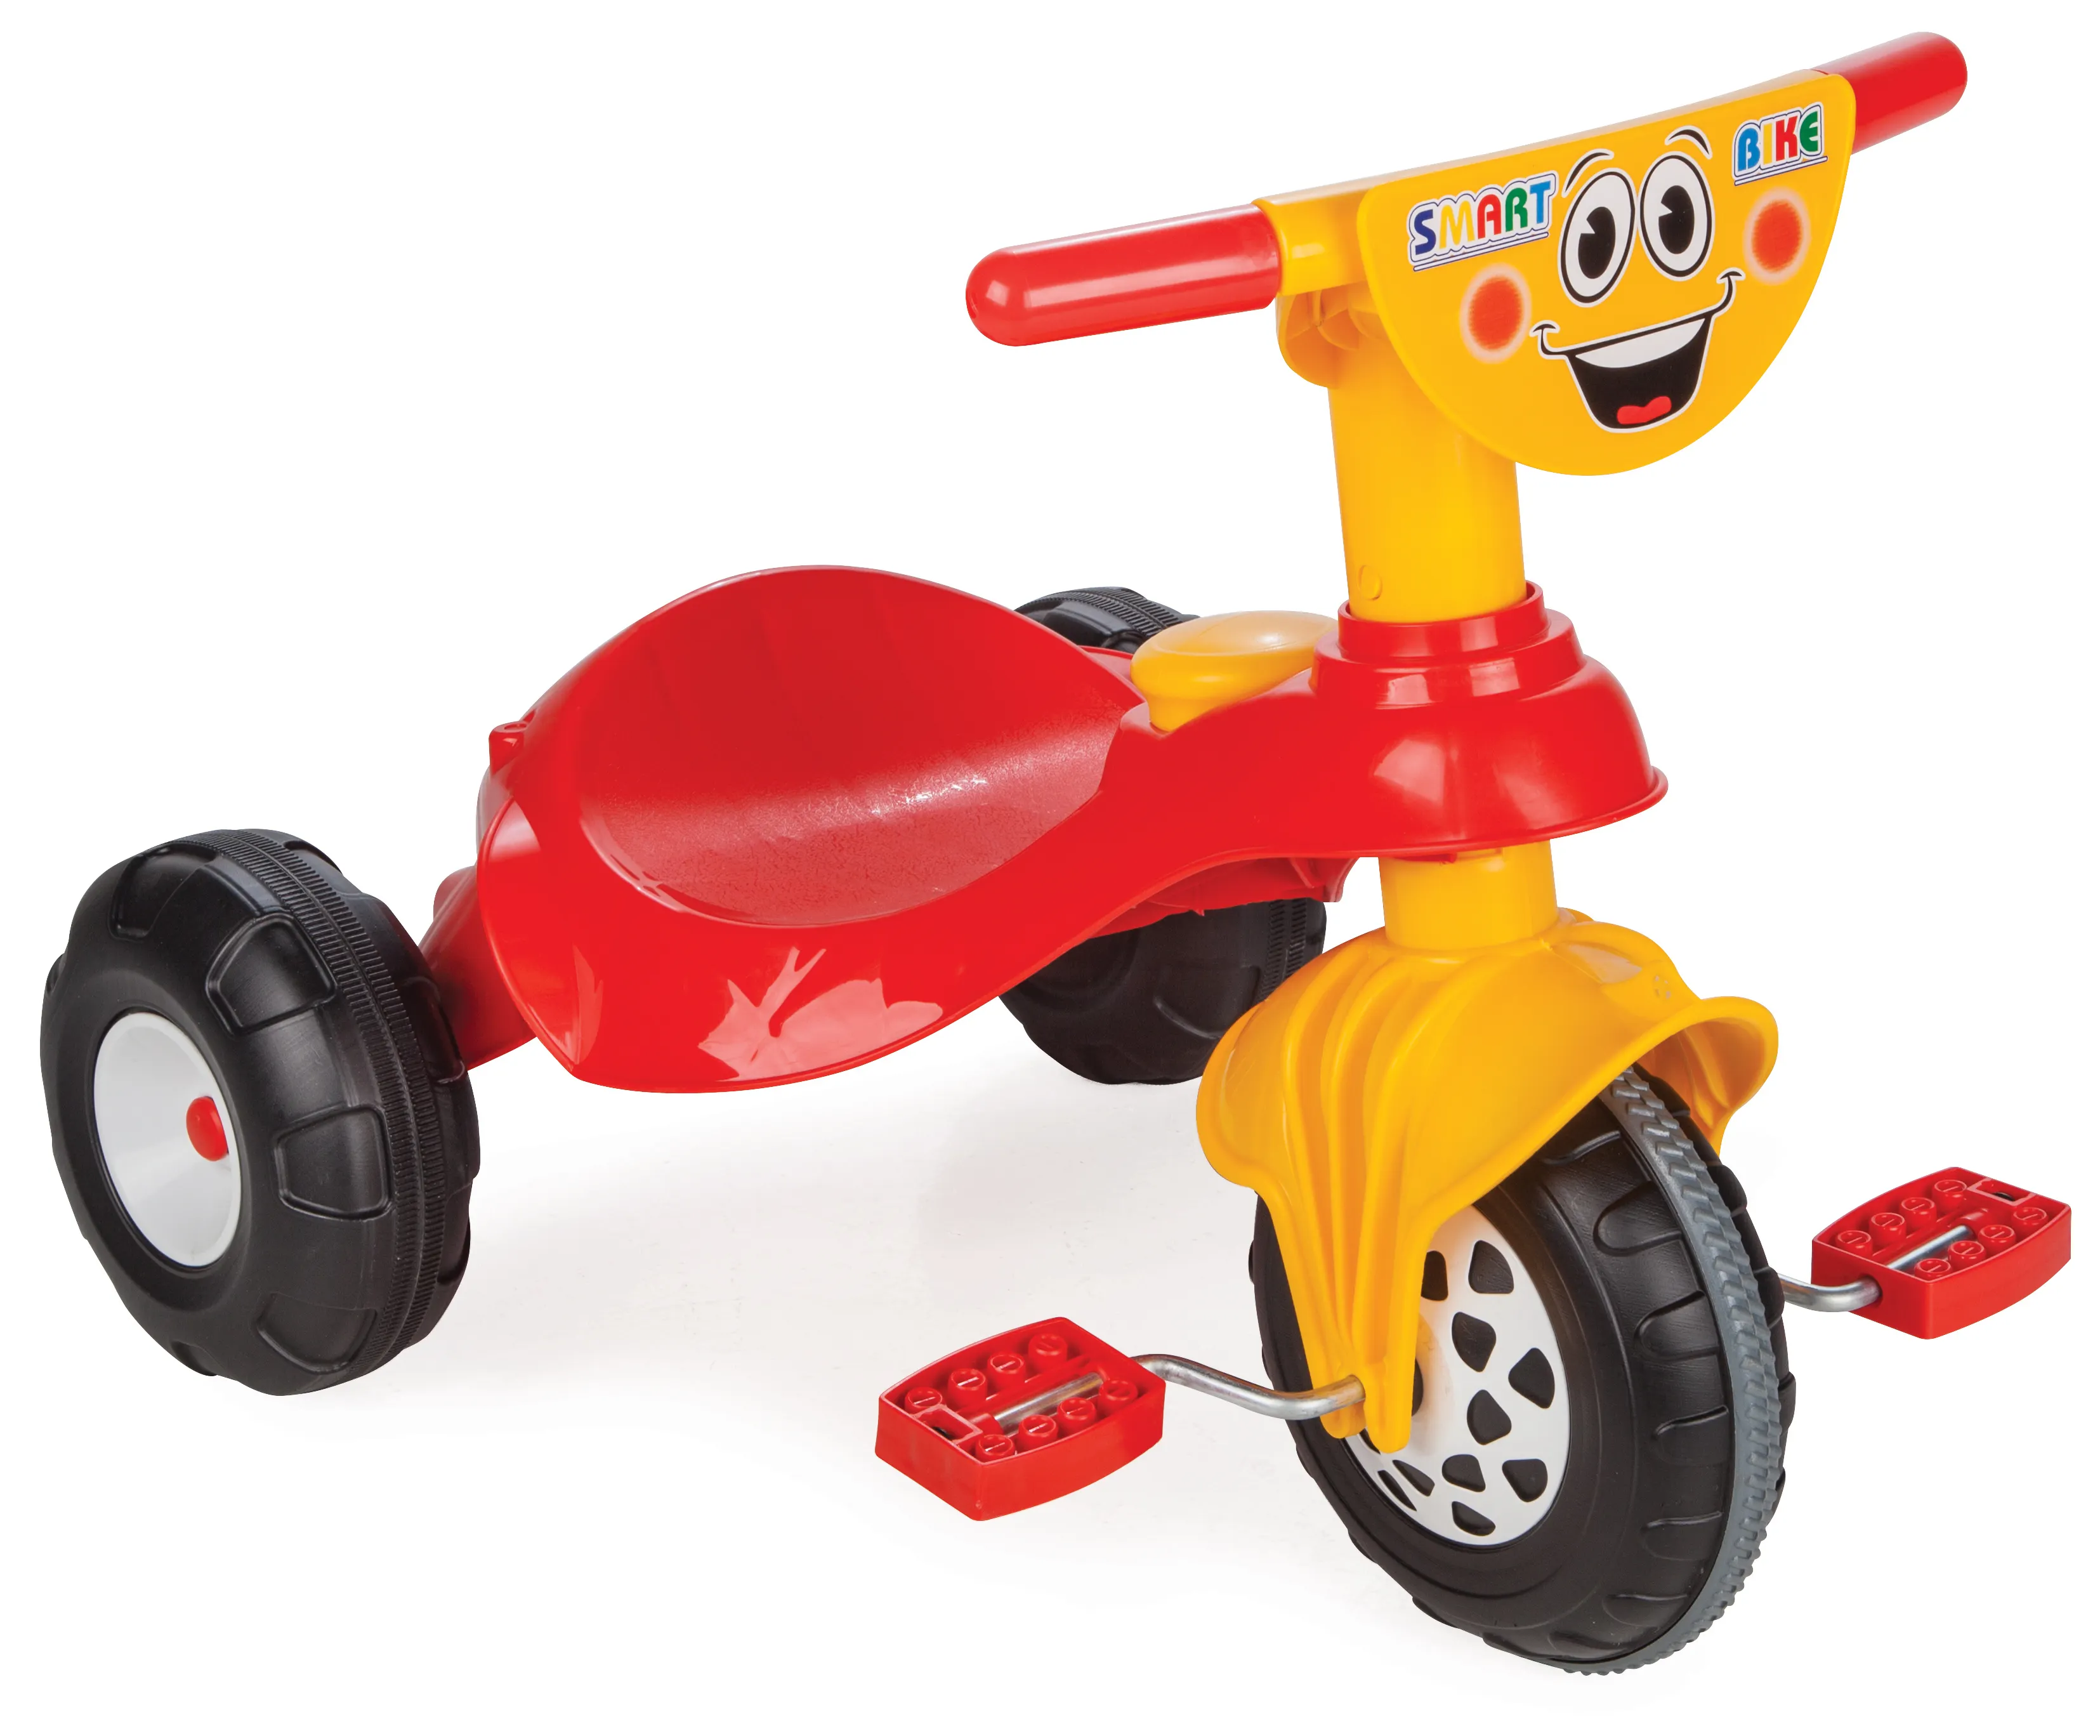 耐久性のある乗りやすい幼児用三輪車3輪ペダルバイク (子供用) 、プラスチック製の自転車用三輪車 (子供用)